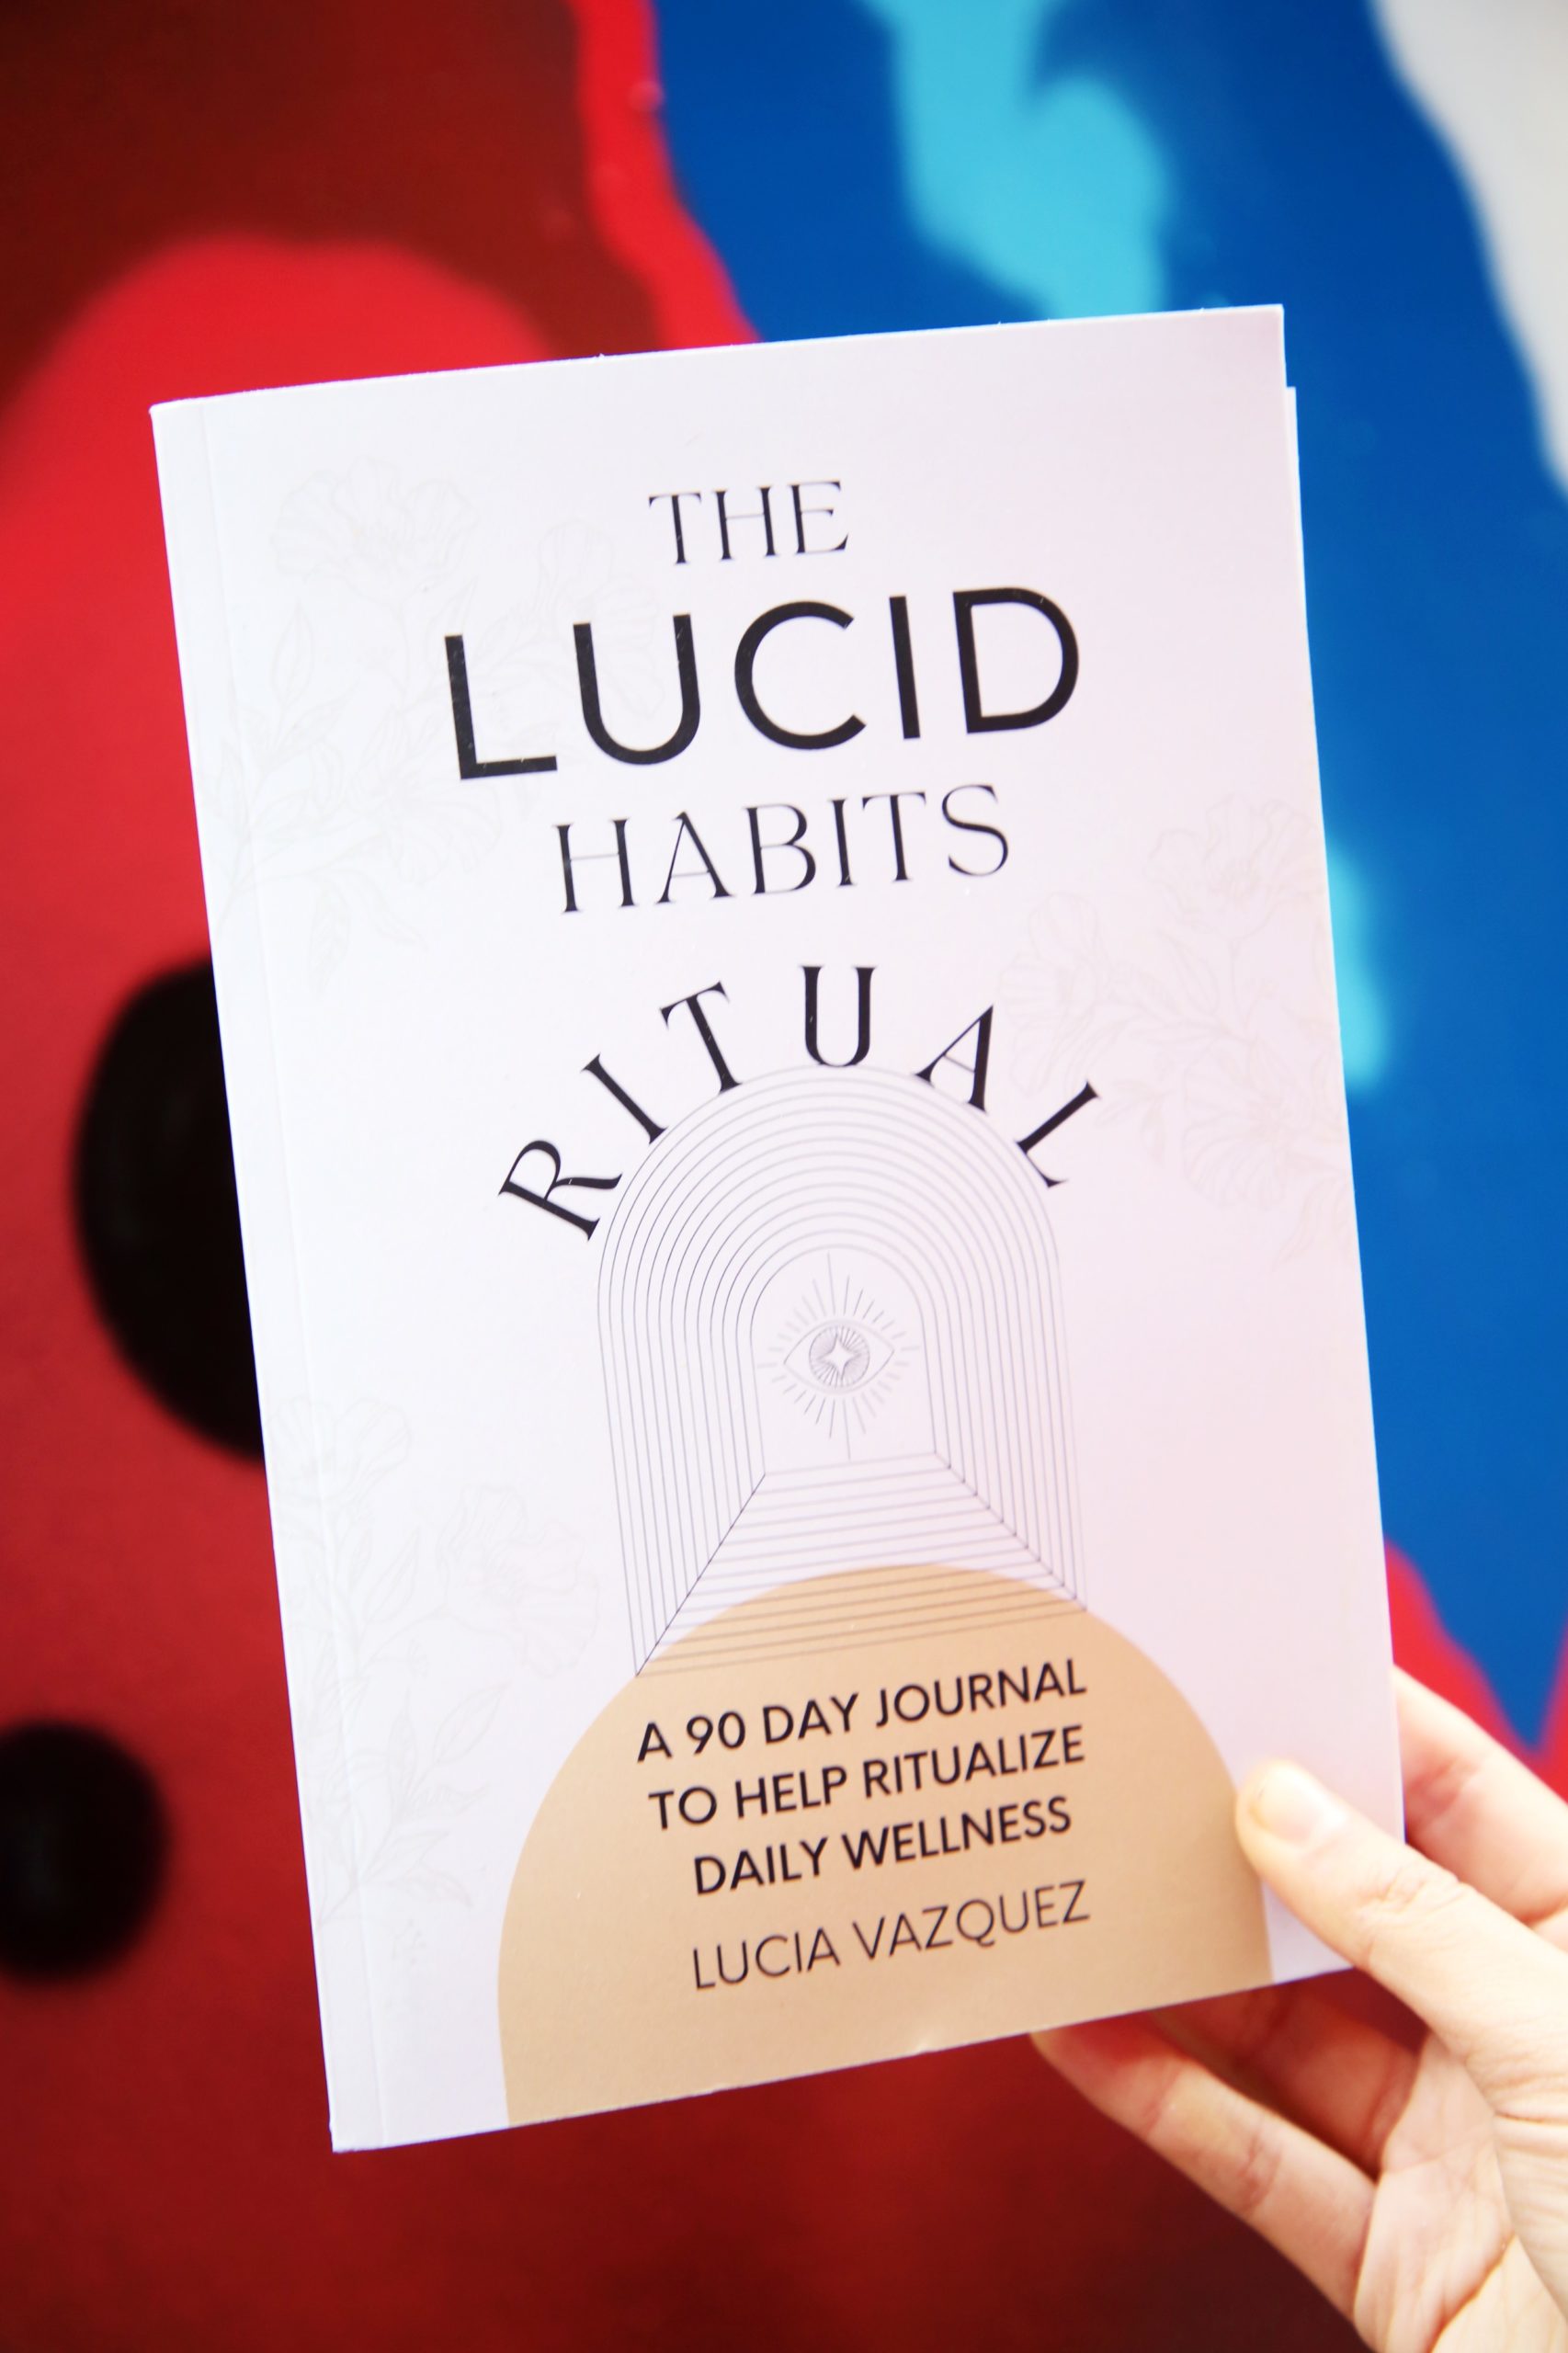 <img src="lucid.jpg" alt="lucid habits ritual journal"/> 